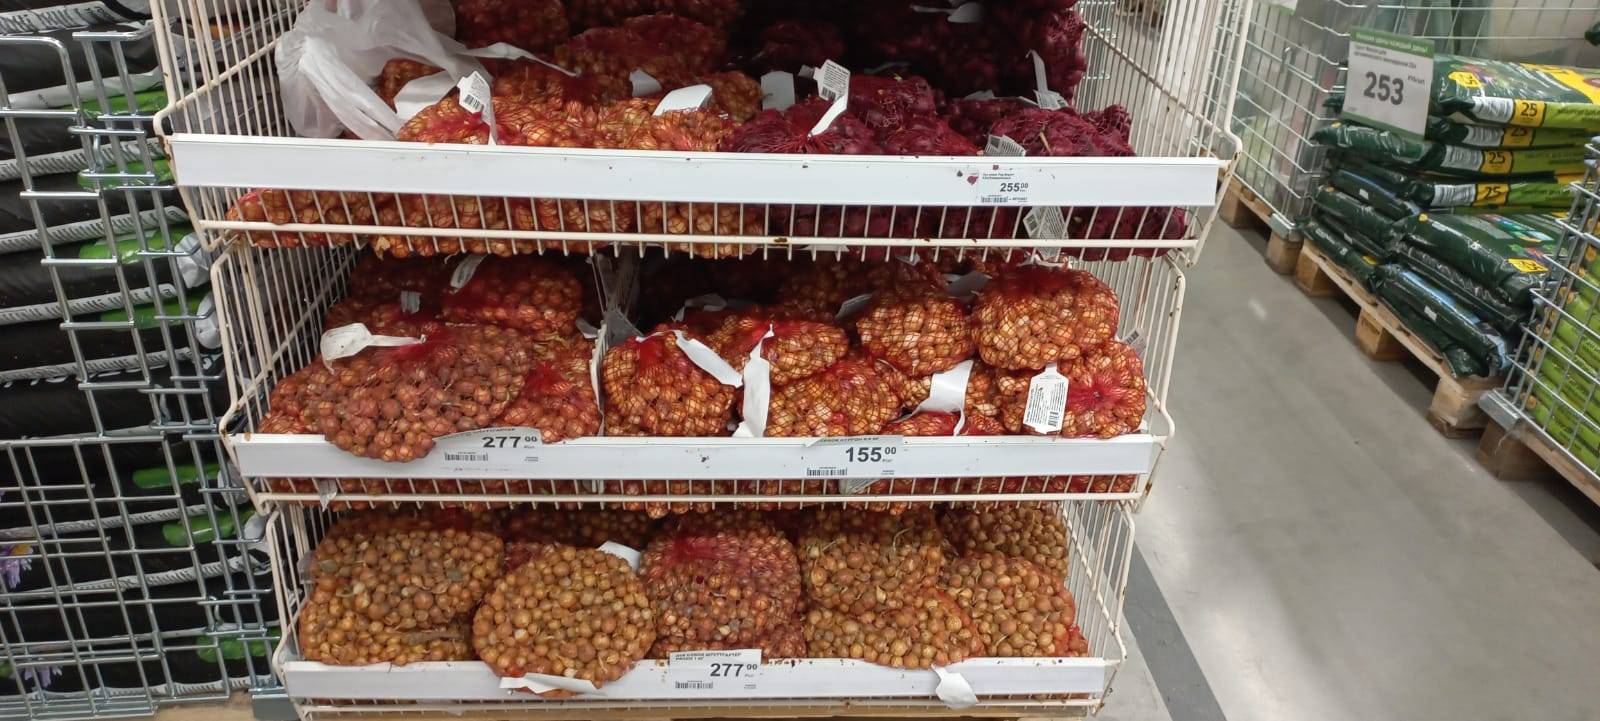 Семена в Новороссийске можно купить от 2 до 150 рублей за пакетик